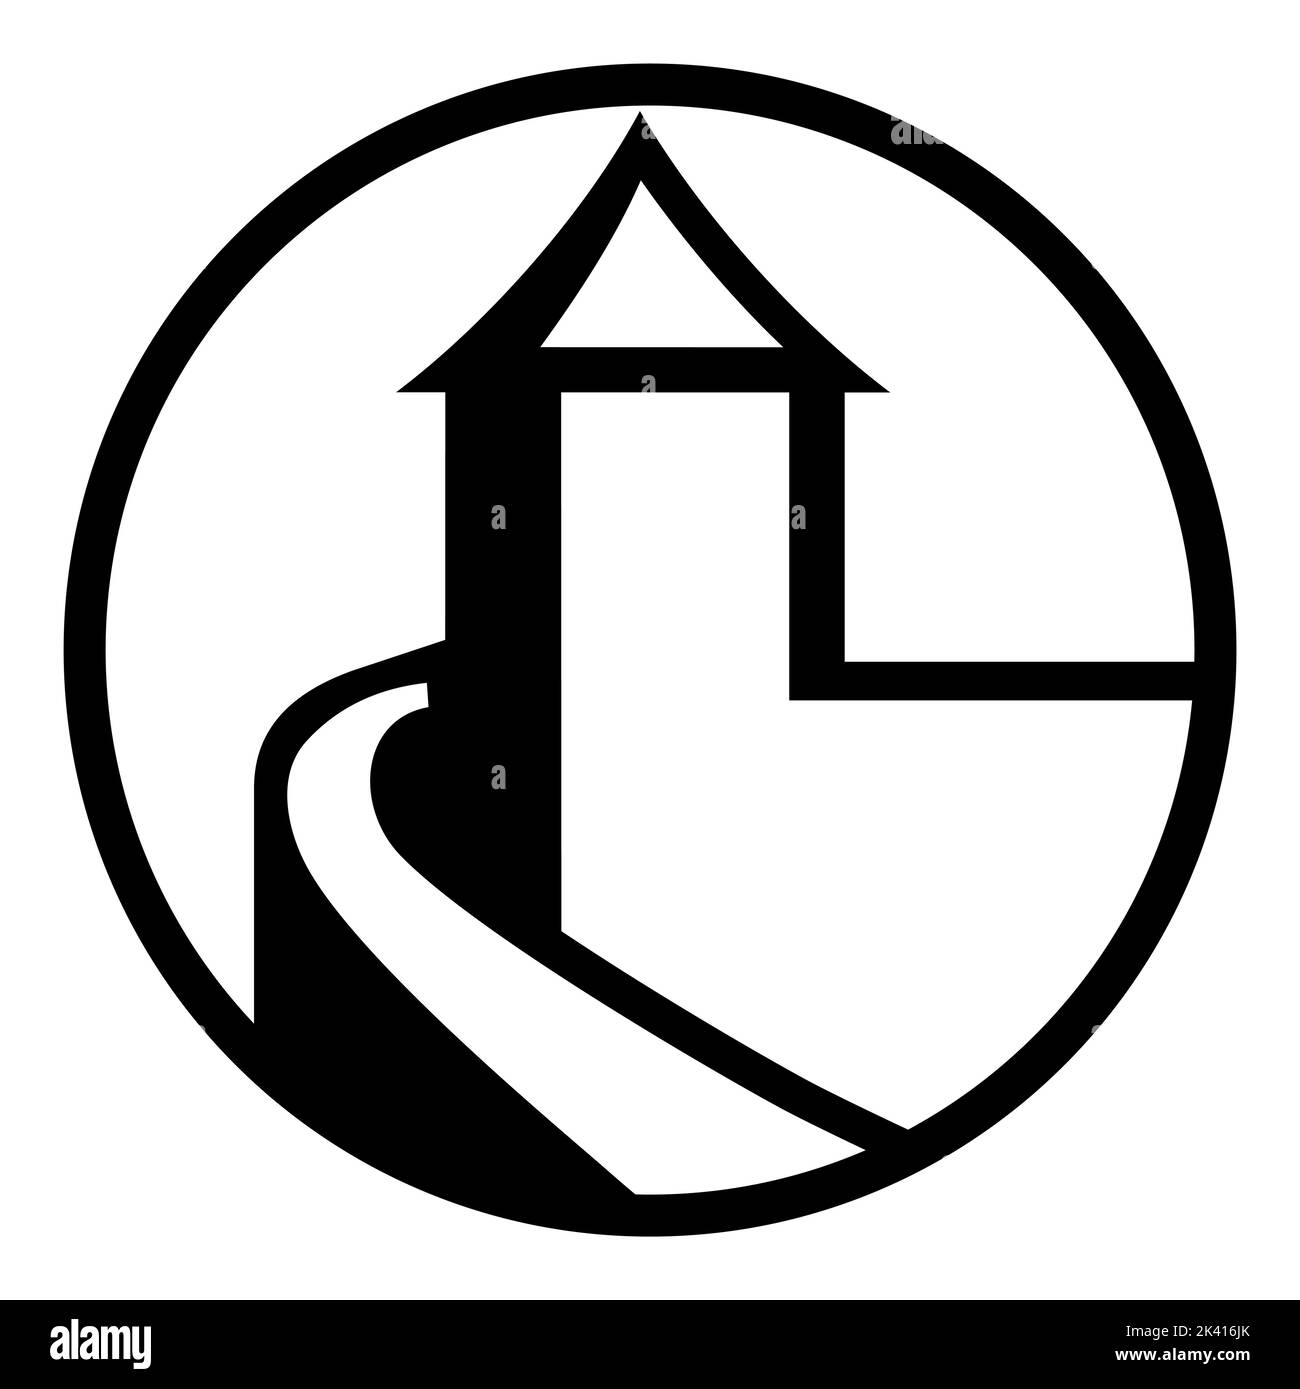 Icona in stile vintage retrò. Badge rotondo della Torre del Castello, logo, Illustrazione Vettoriale